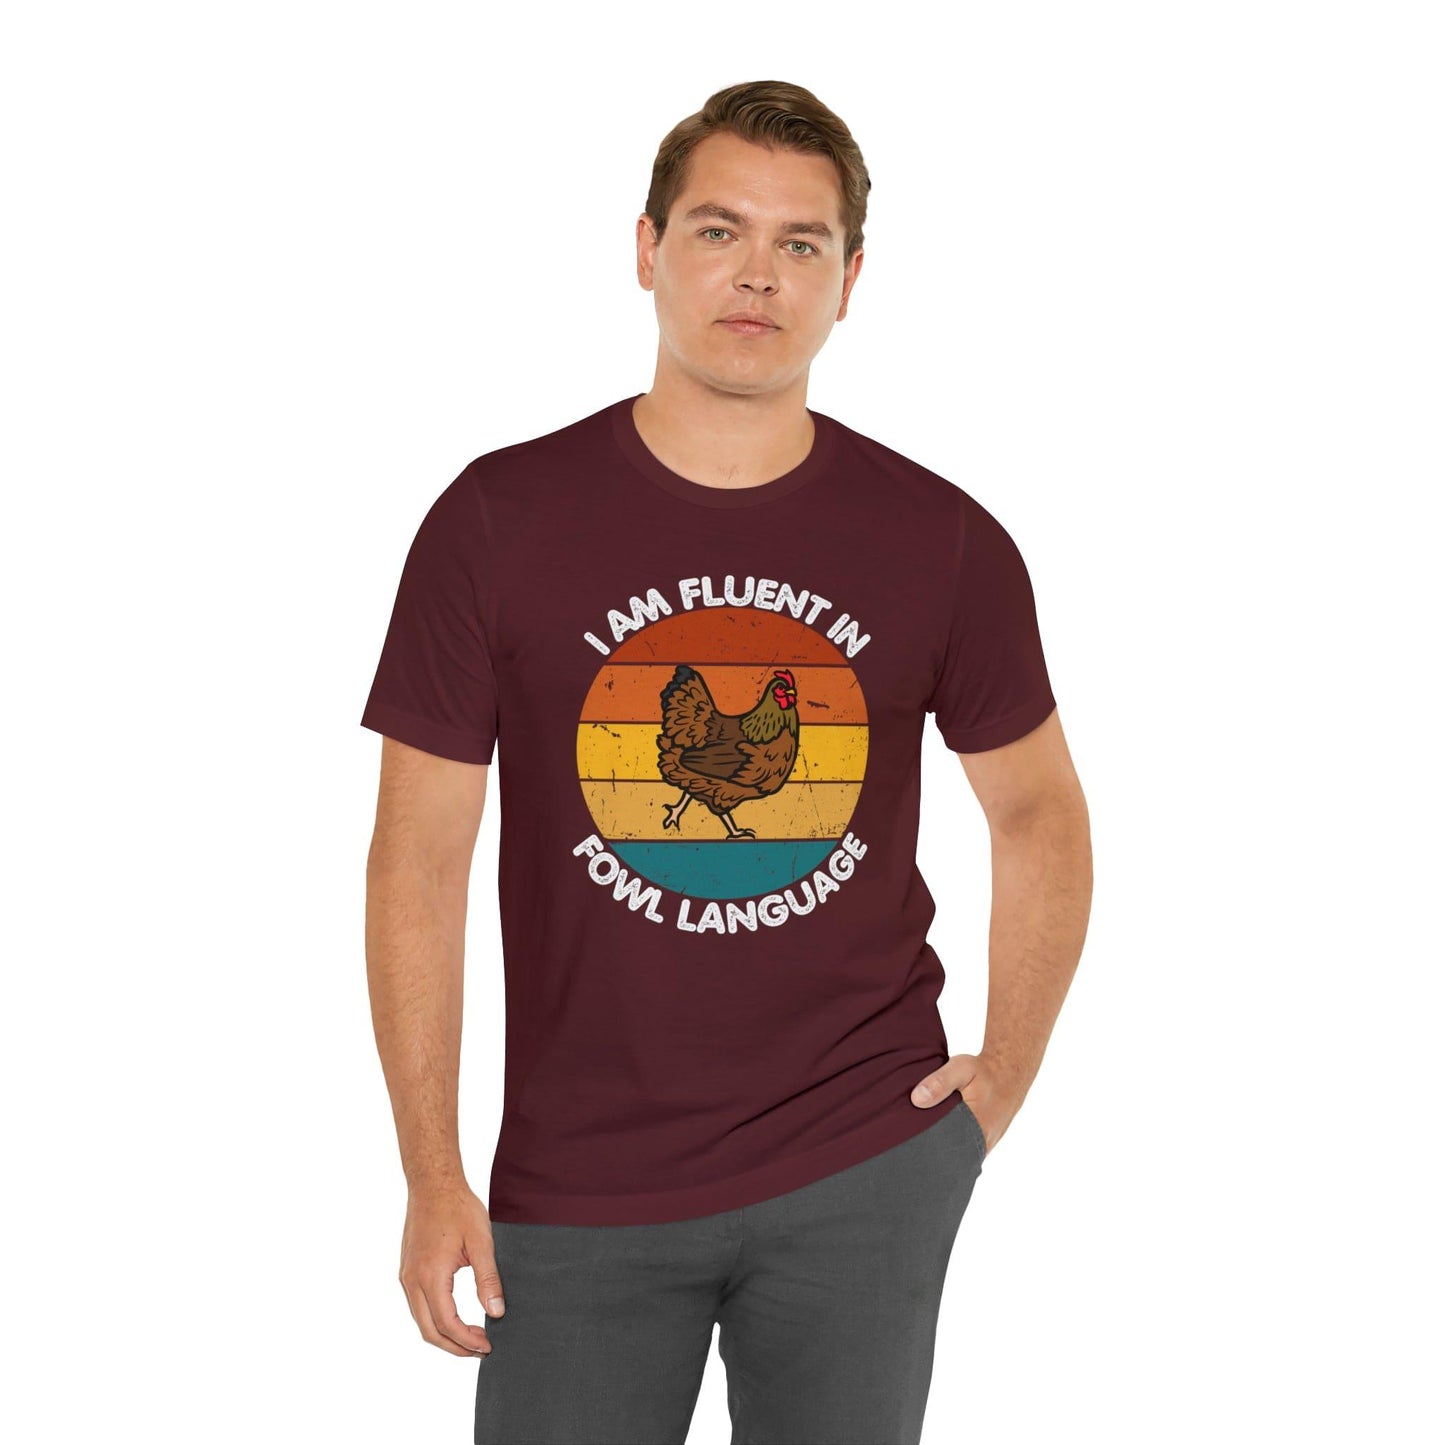 Fluent in Fowl Language shirt, Chicken Shirt Chicken Tee Chicken Owner Gift - Gift For Chicken Lover gift